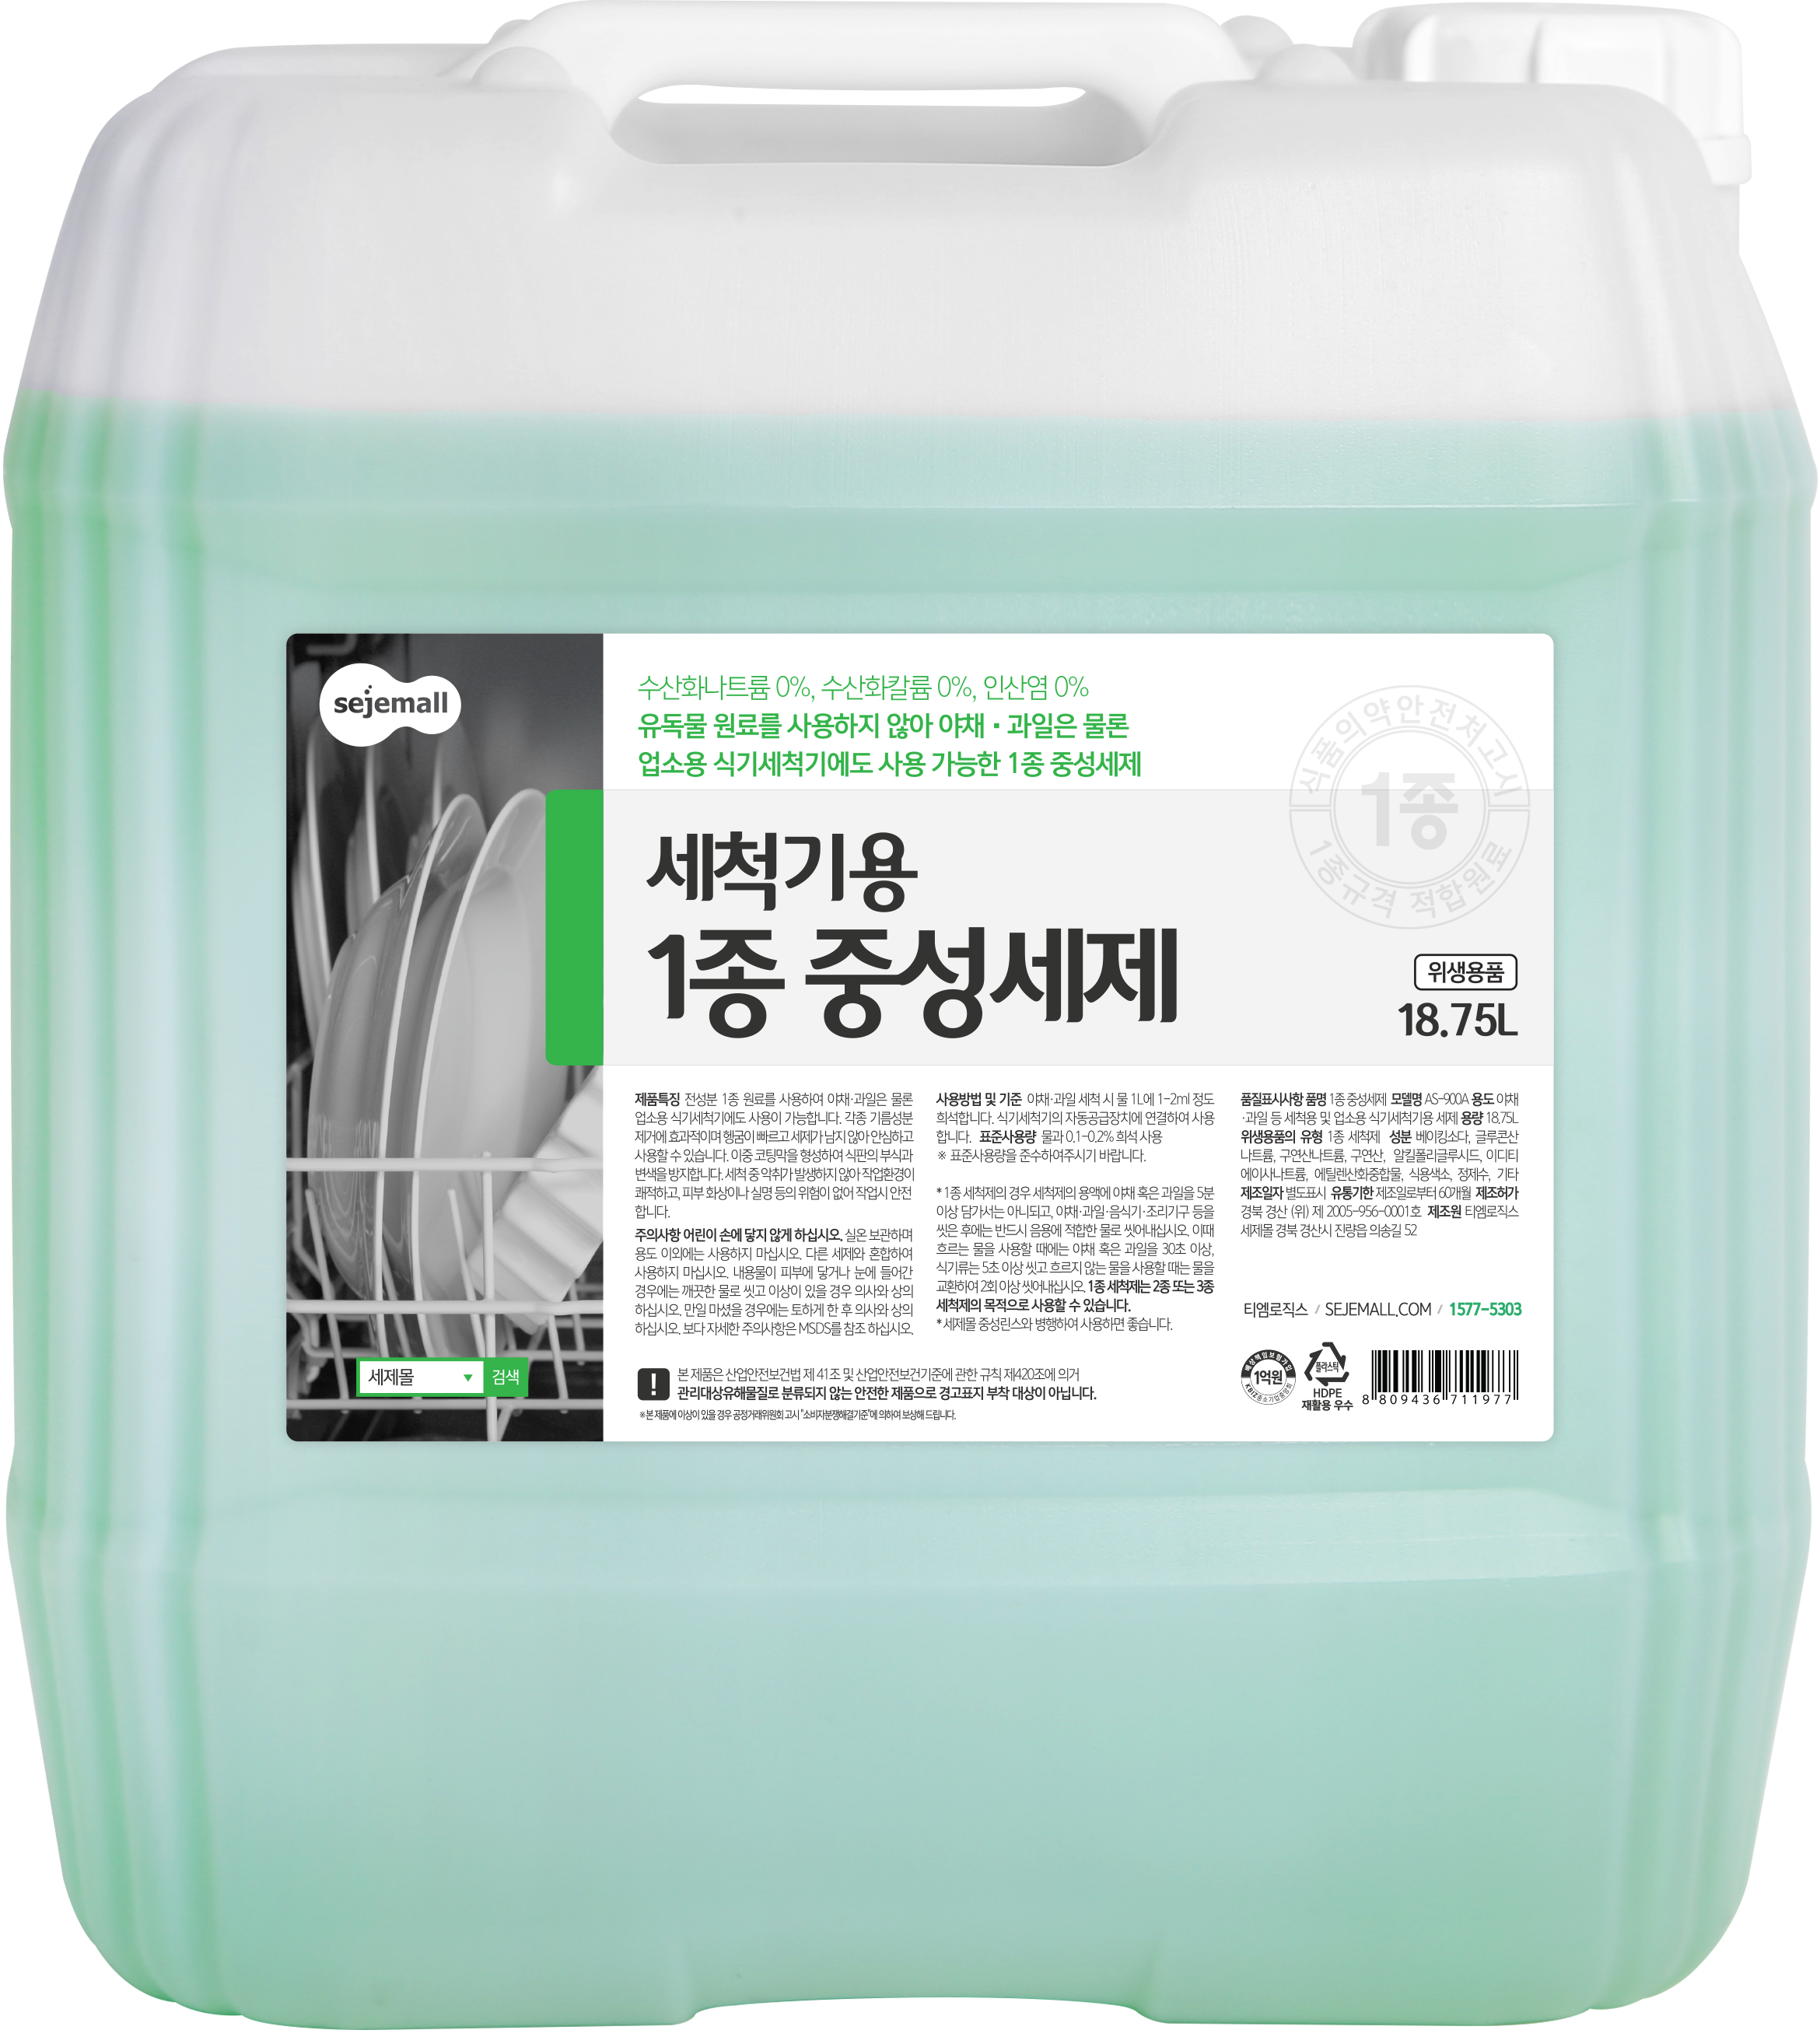 [수산화나트륨0%] 식기세척기 1종 중성세제 GREEN 18.75L